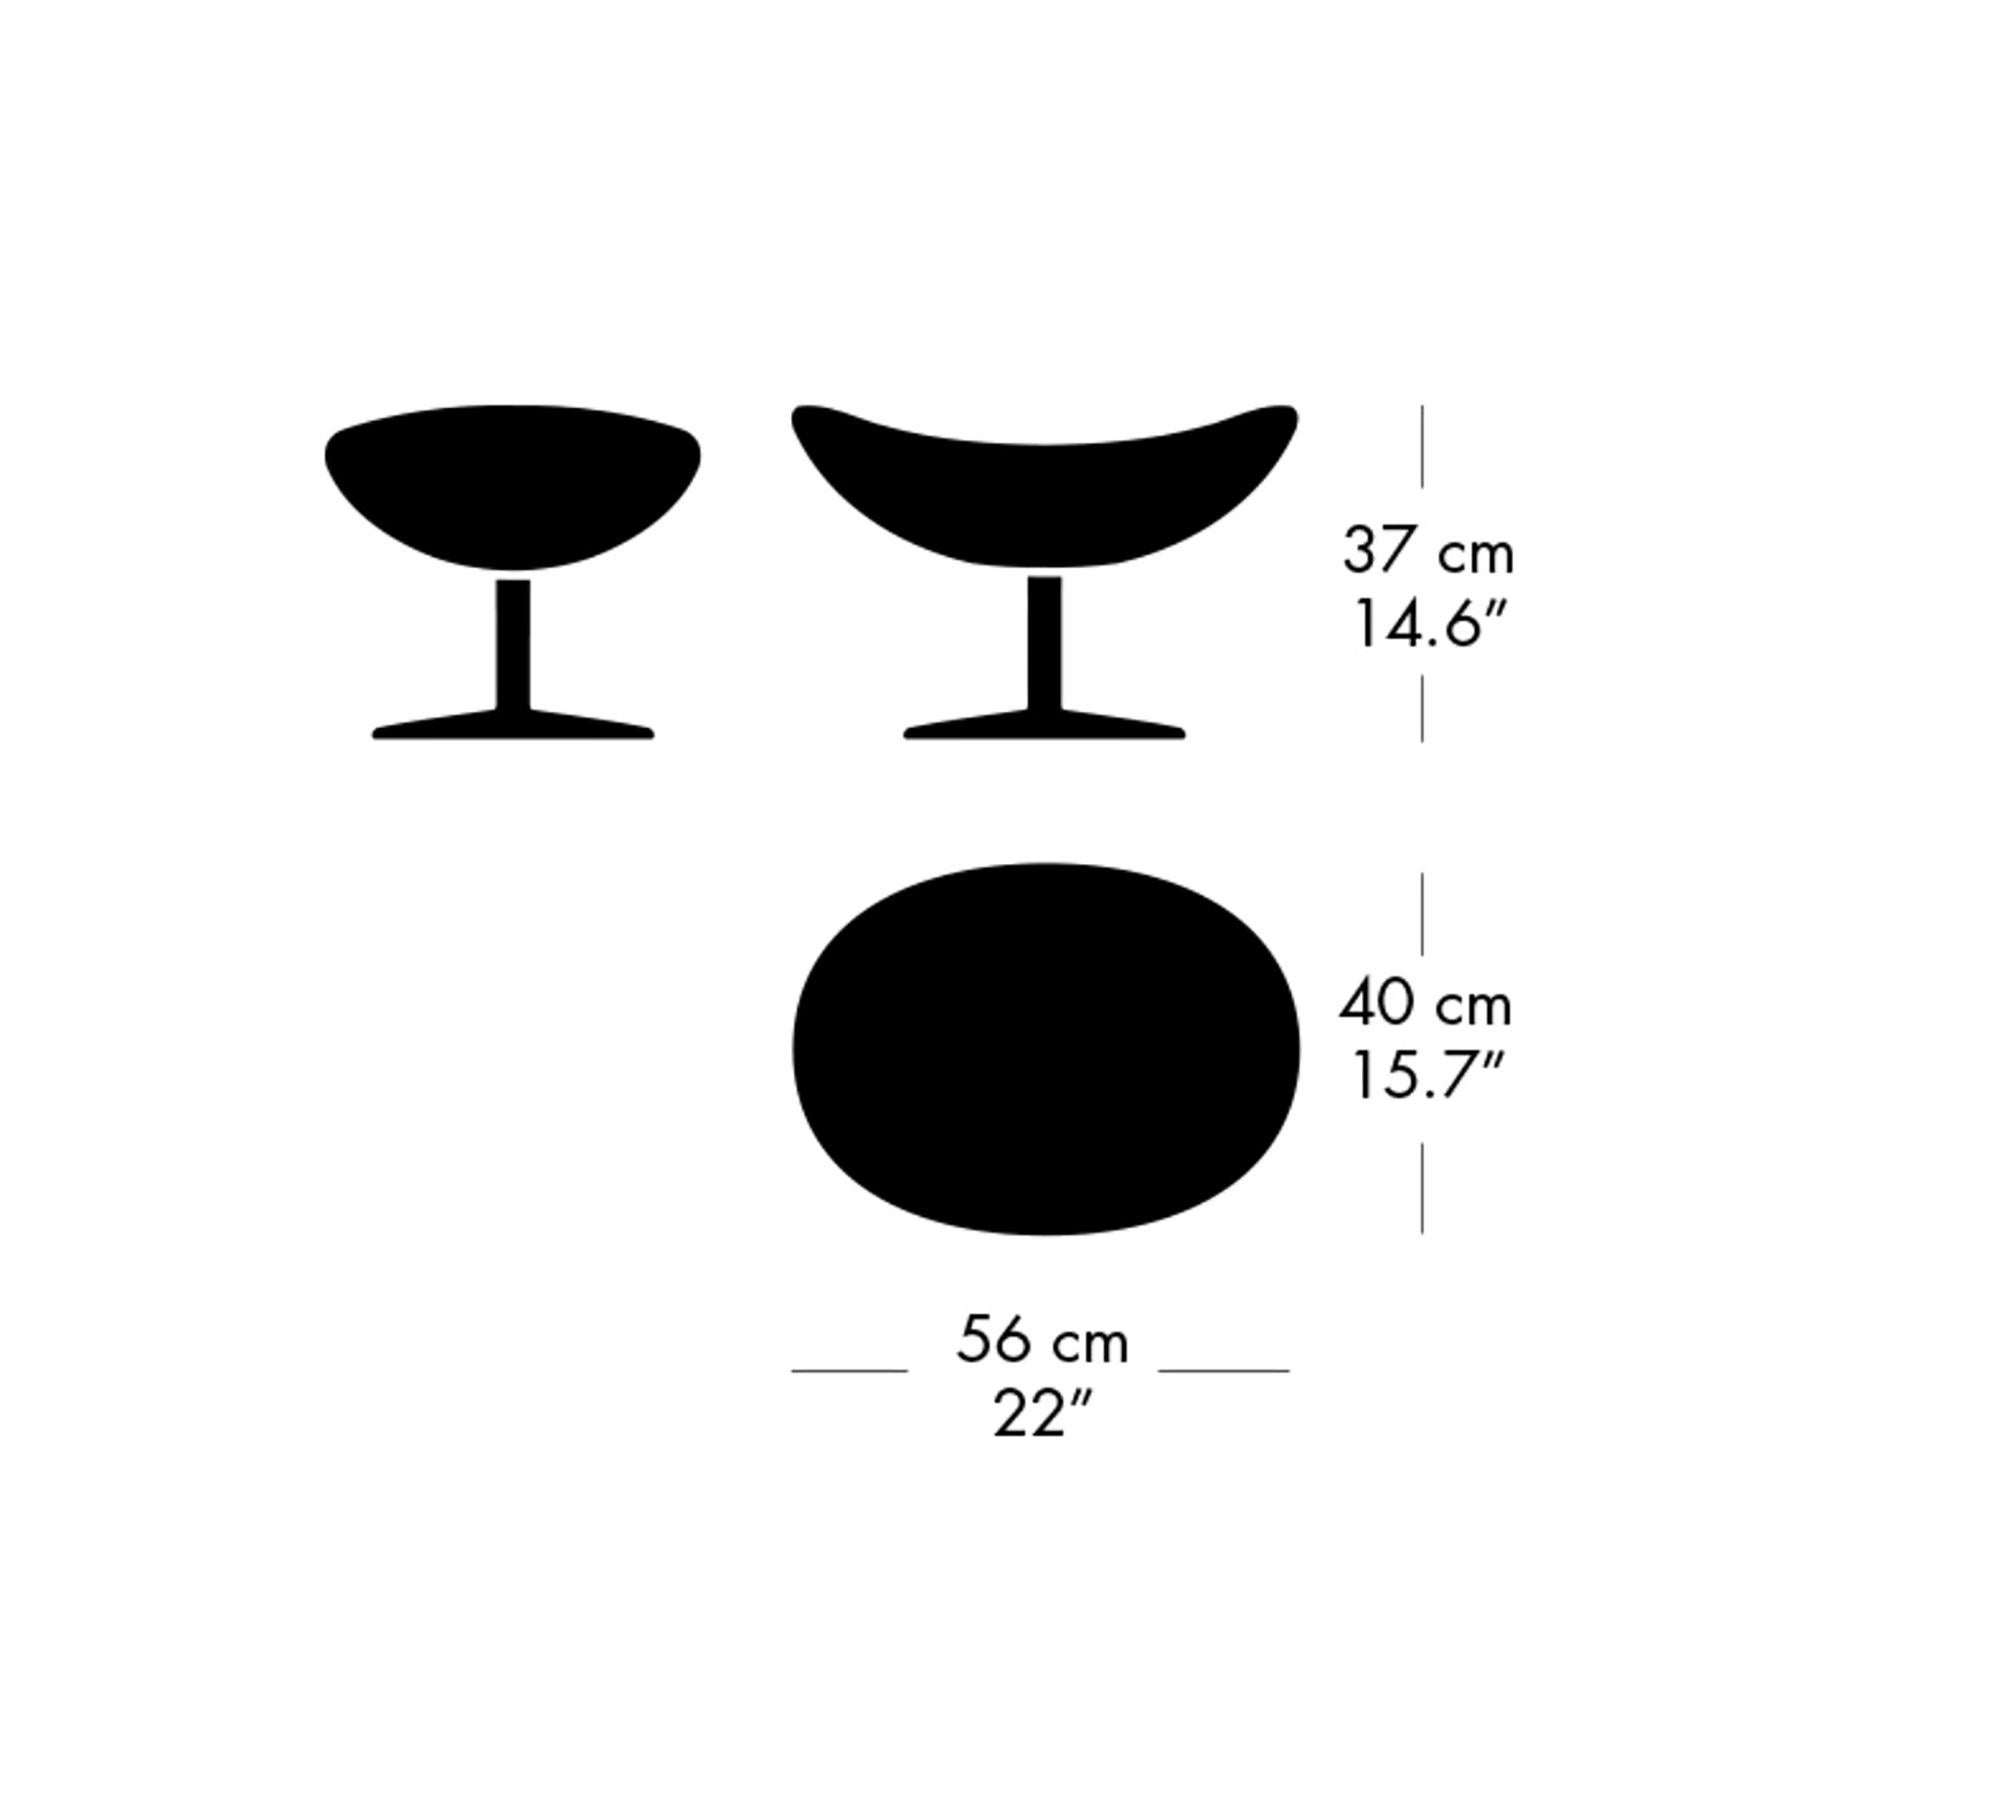 Arne Jacobsen 'Egg' Footstool for Fritz Hansen in Leather Upholstery (Cat. 5) For Sale 7